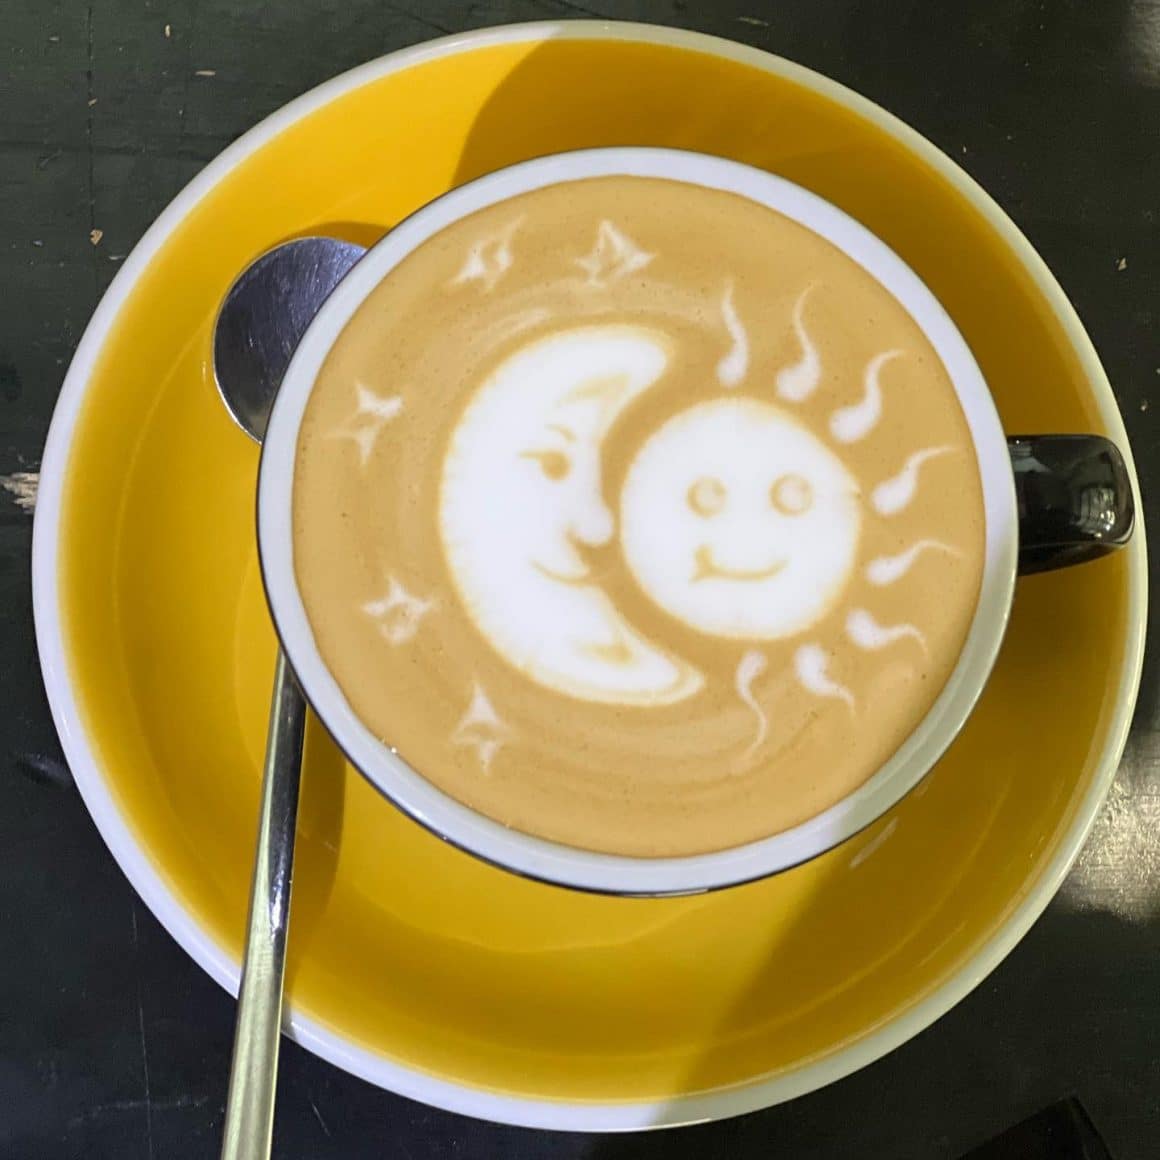 ceasca de cafea fotografiata de sus cu imagine soare si luna facuta din lapte